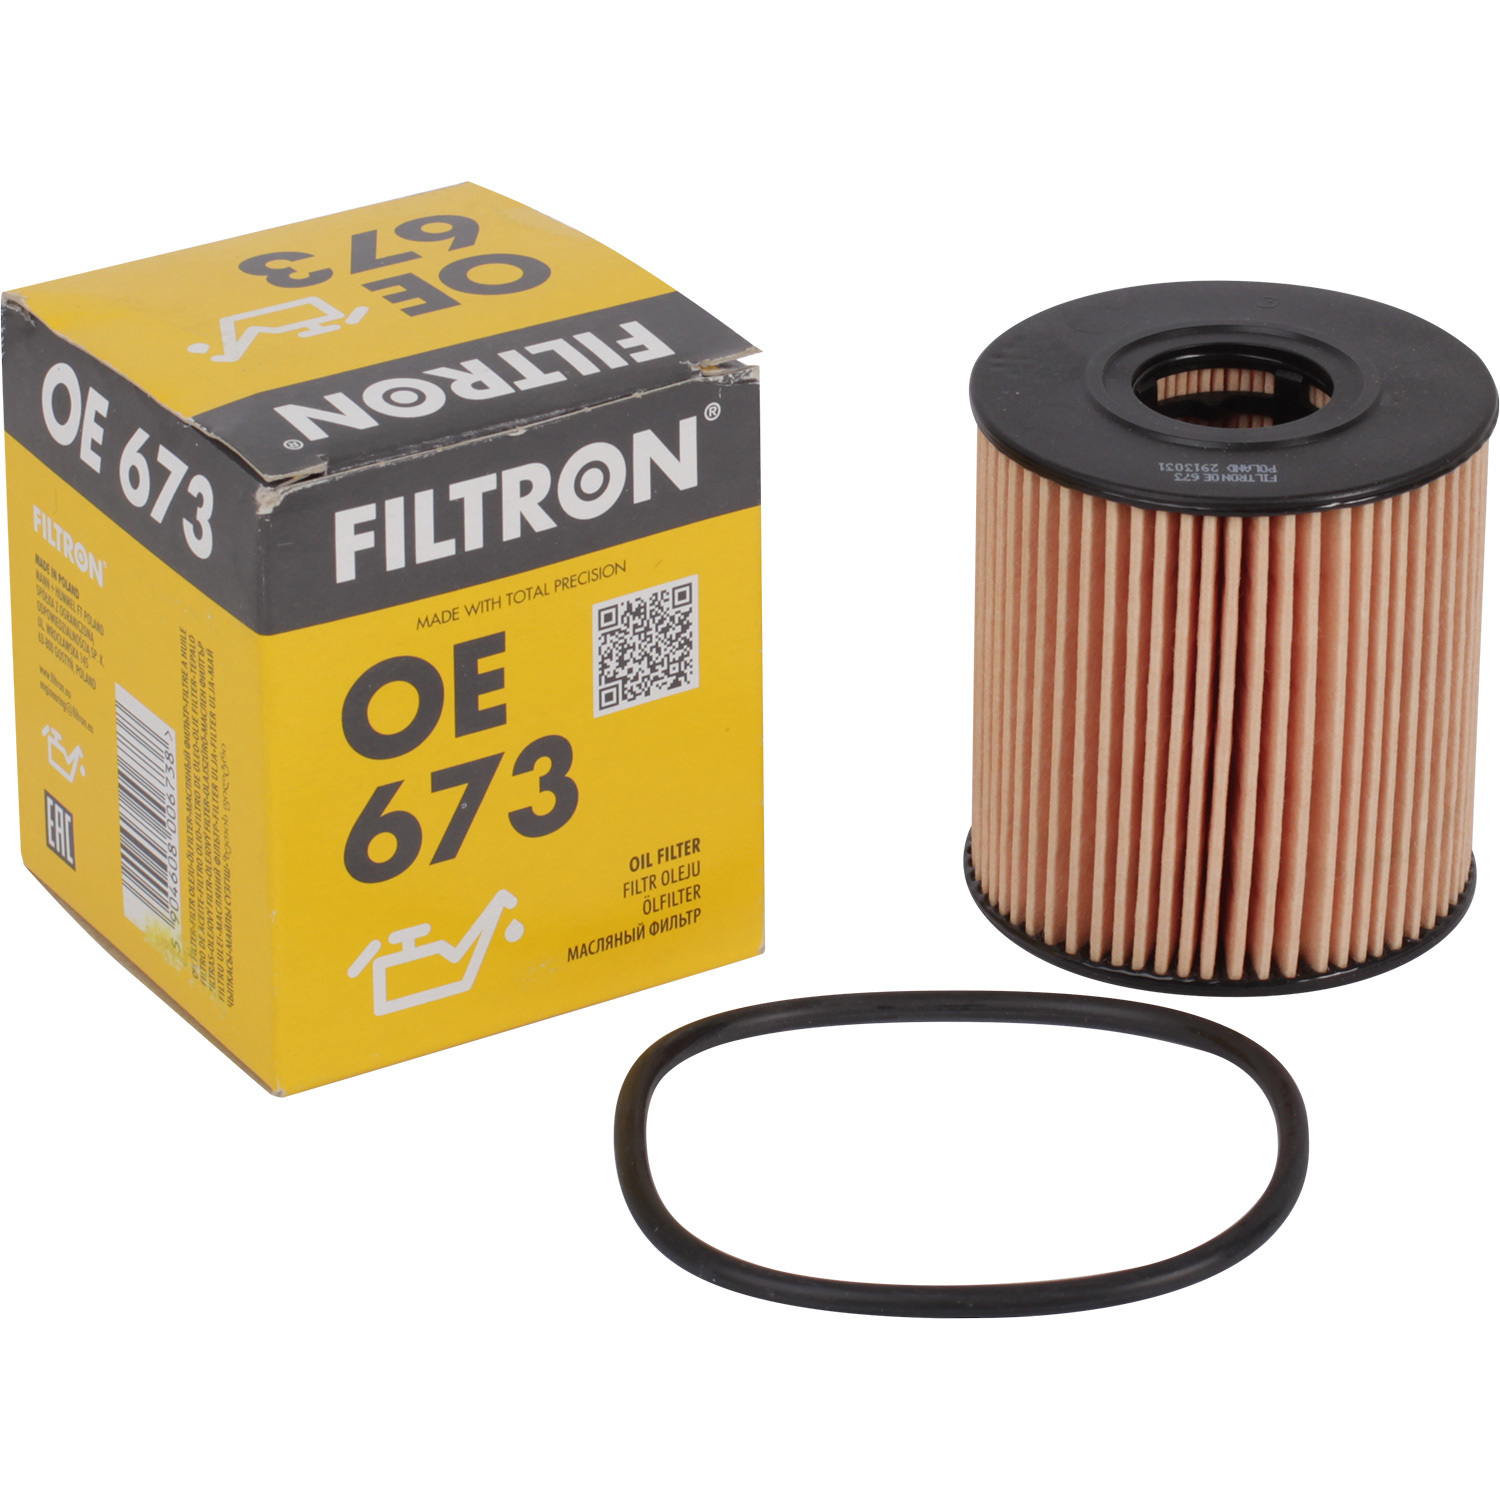 фильтры filtron фильтр масляный filtron op5662 Фильтры Filtron Фильтр масляный Filtron OE673